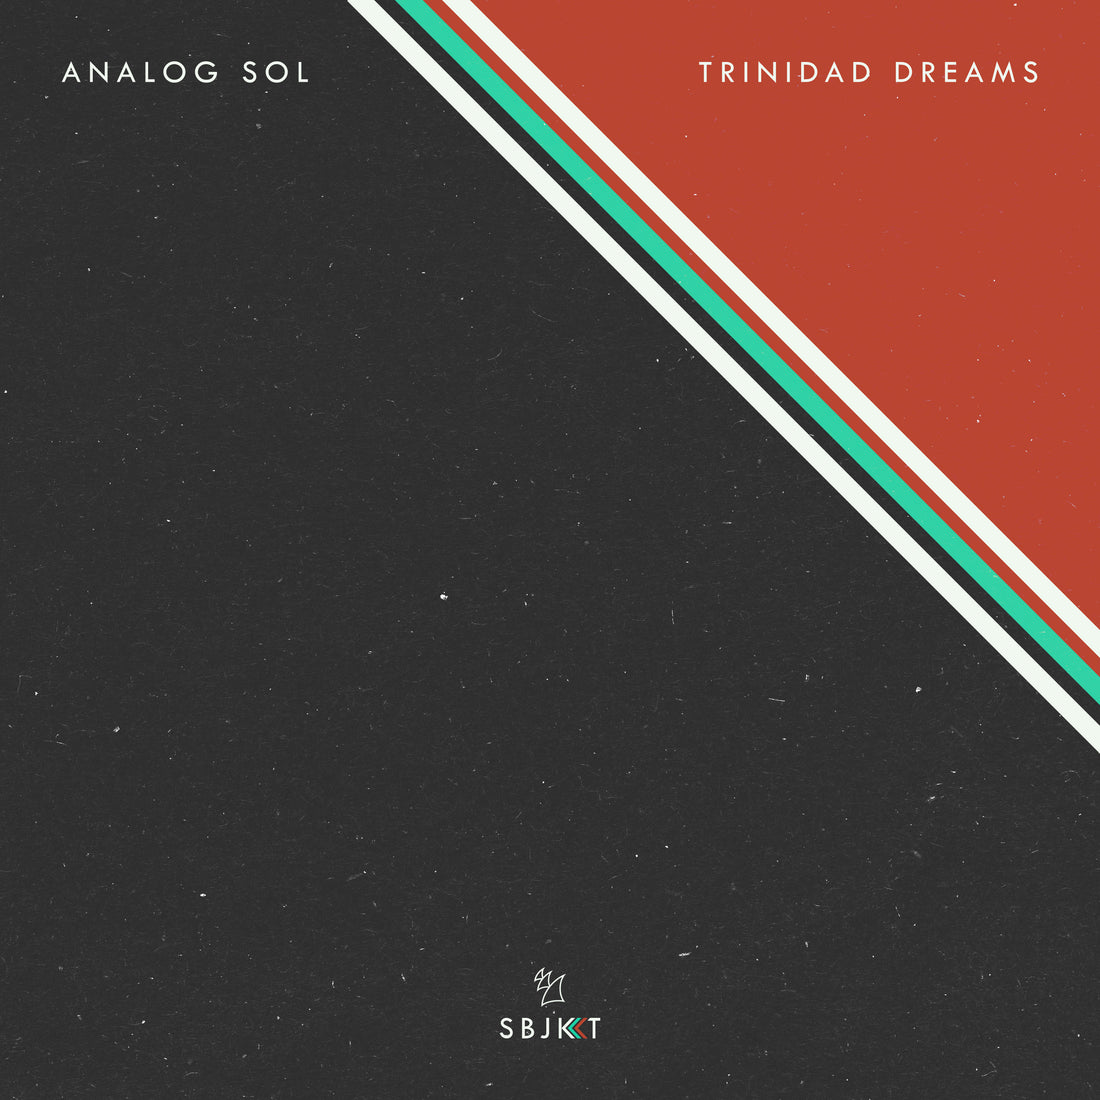 Trinidad Dreams released today!